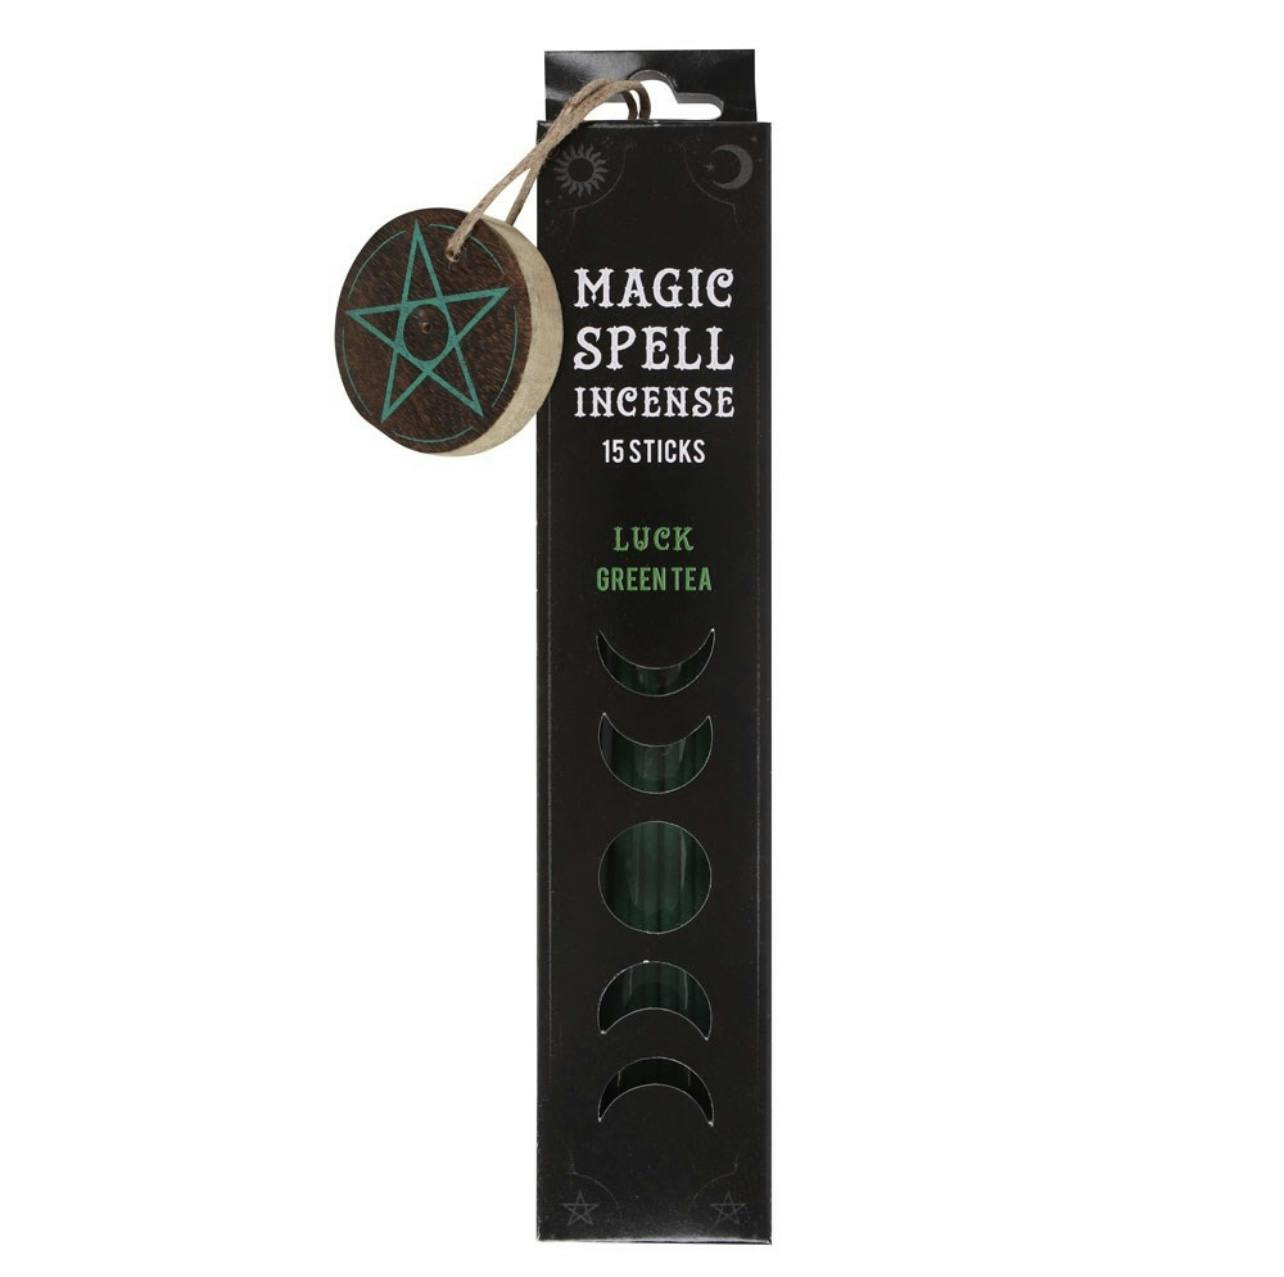 Magic spells rökelse, Luck green tea